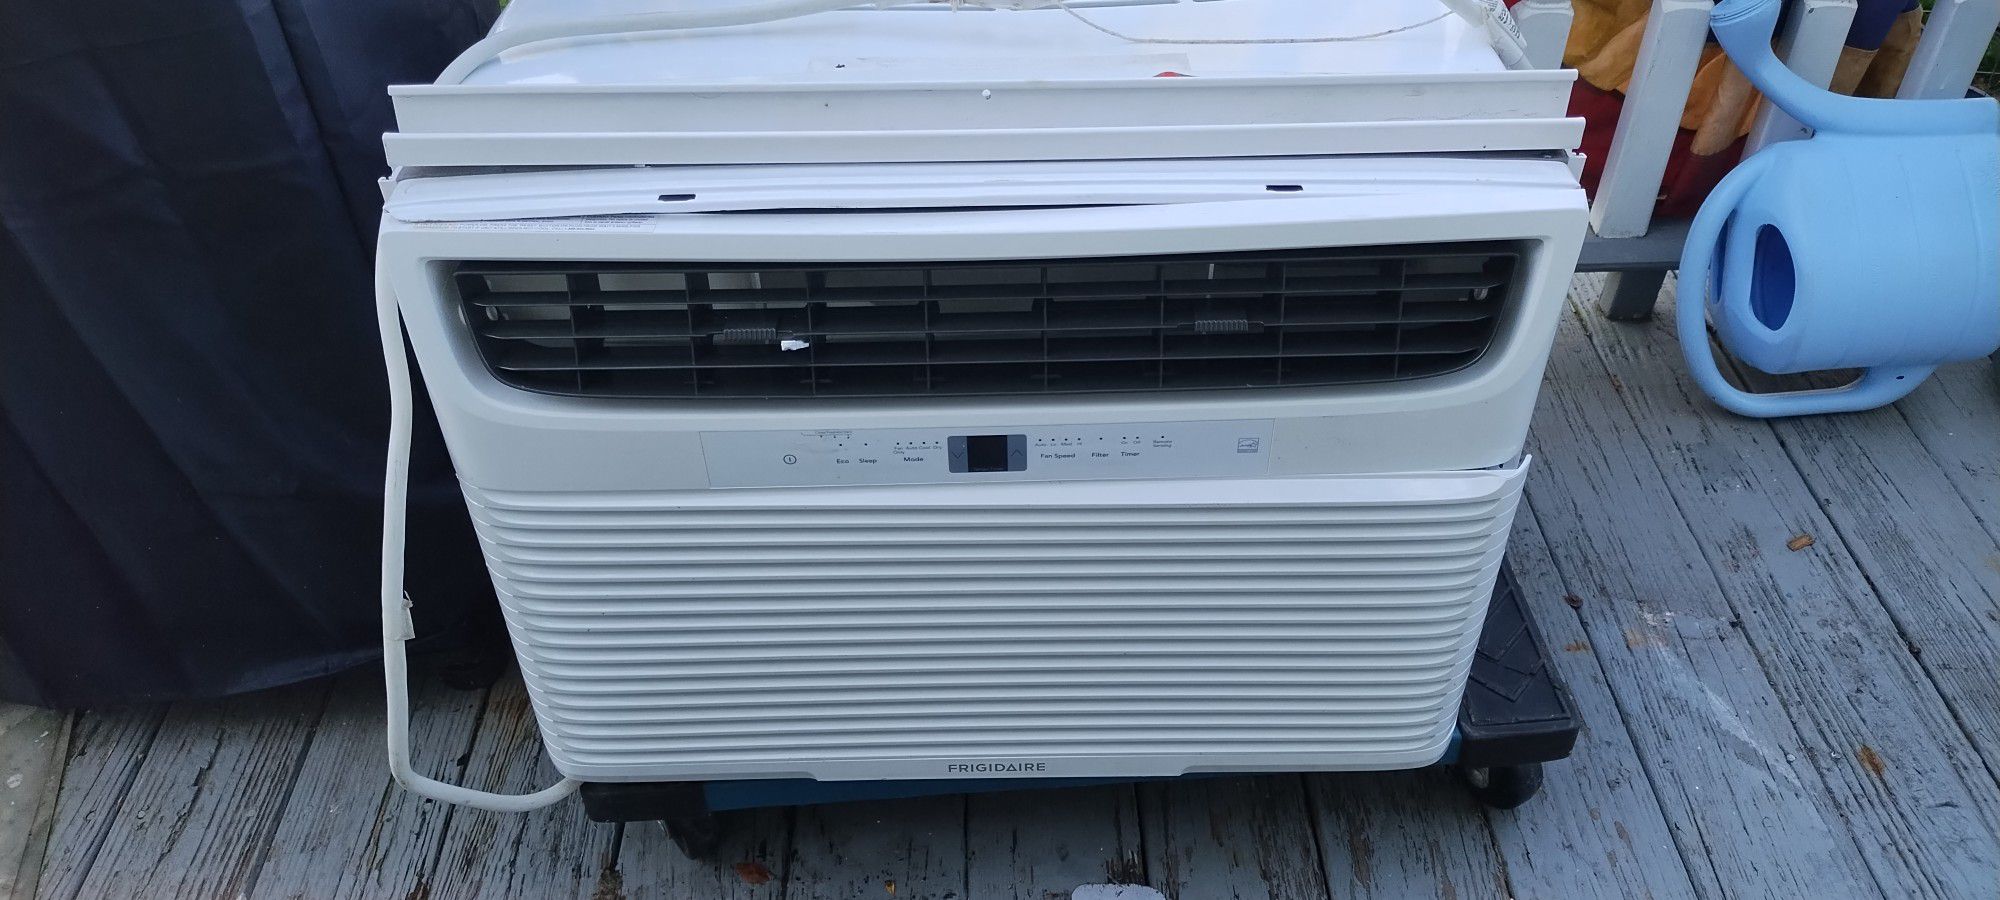 25000btu Fridgeadare Air Conditioner .